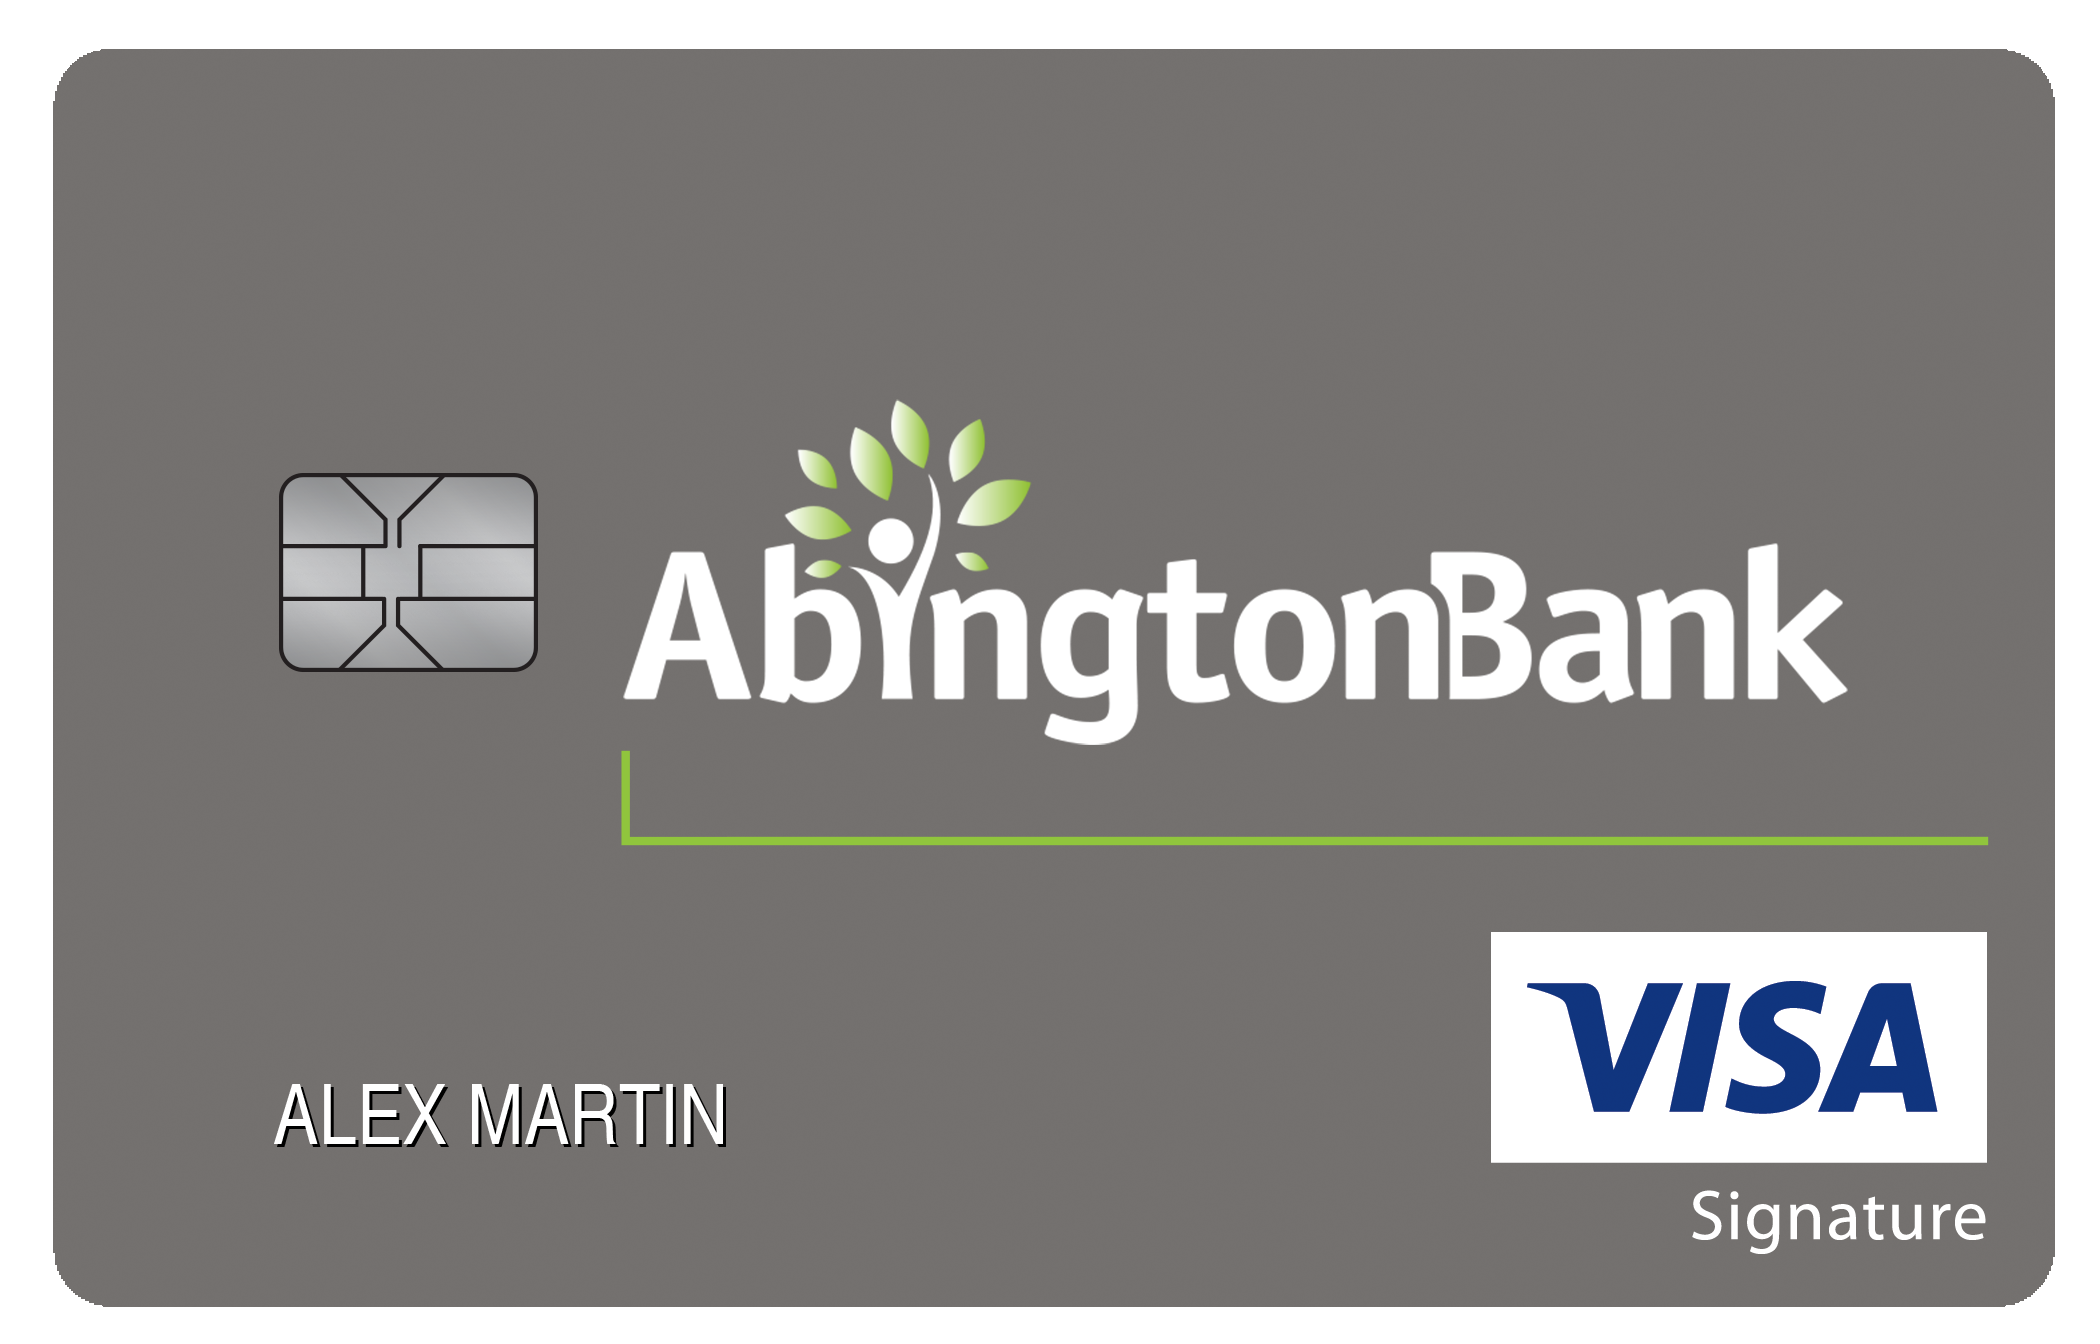 Abington Bank